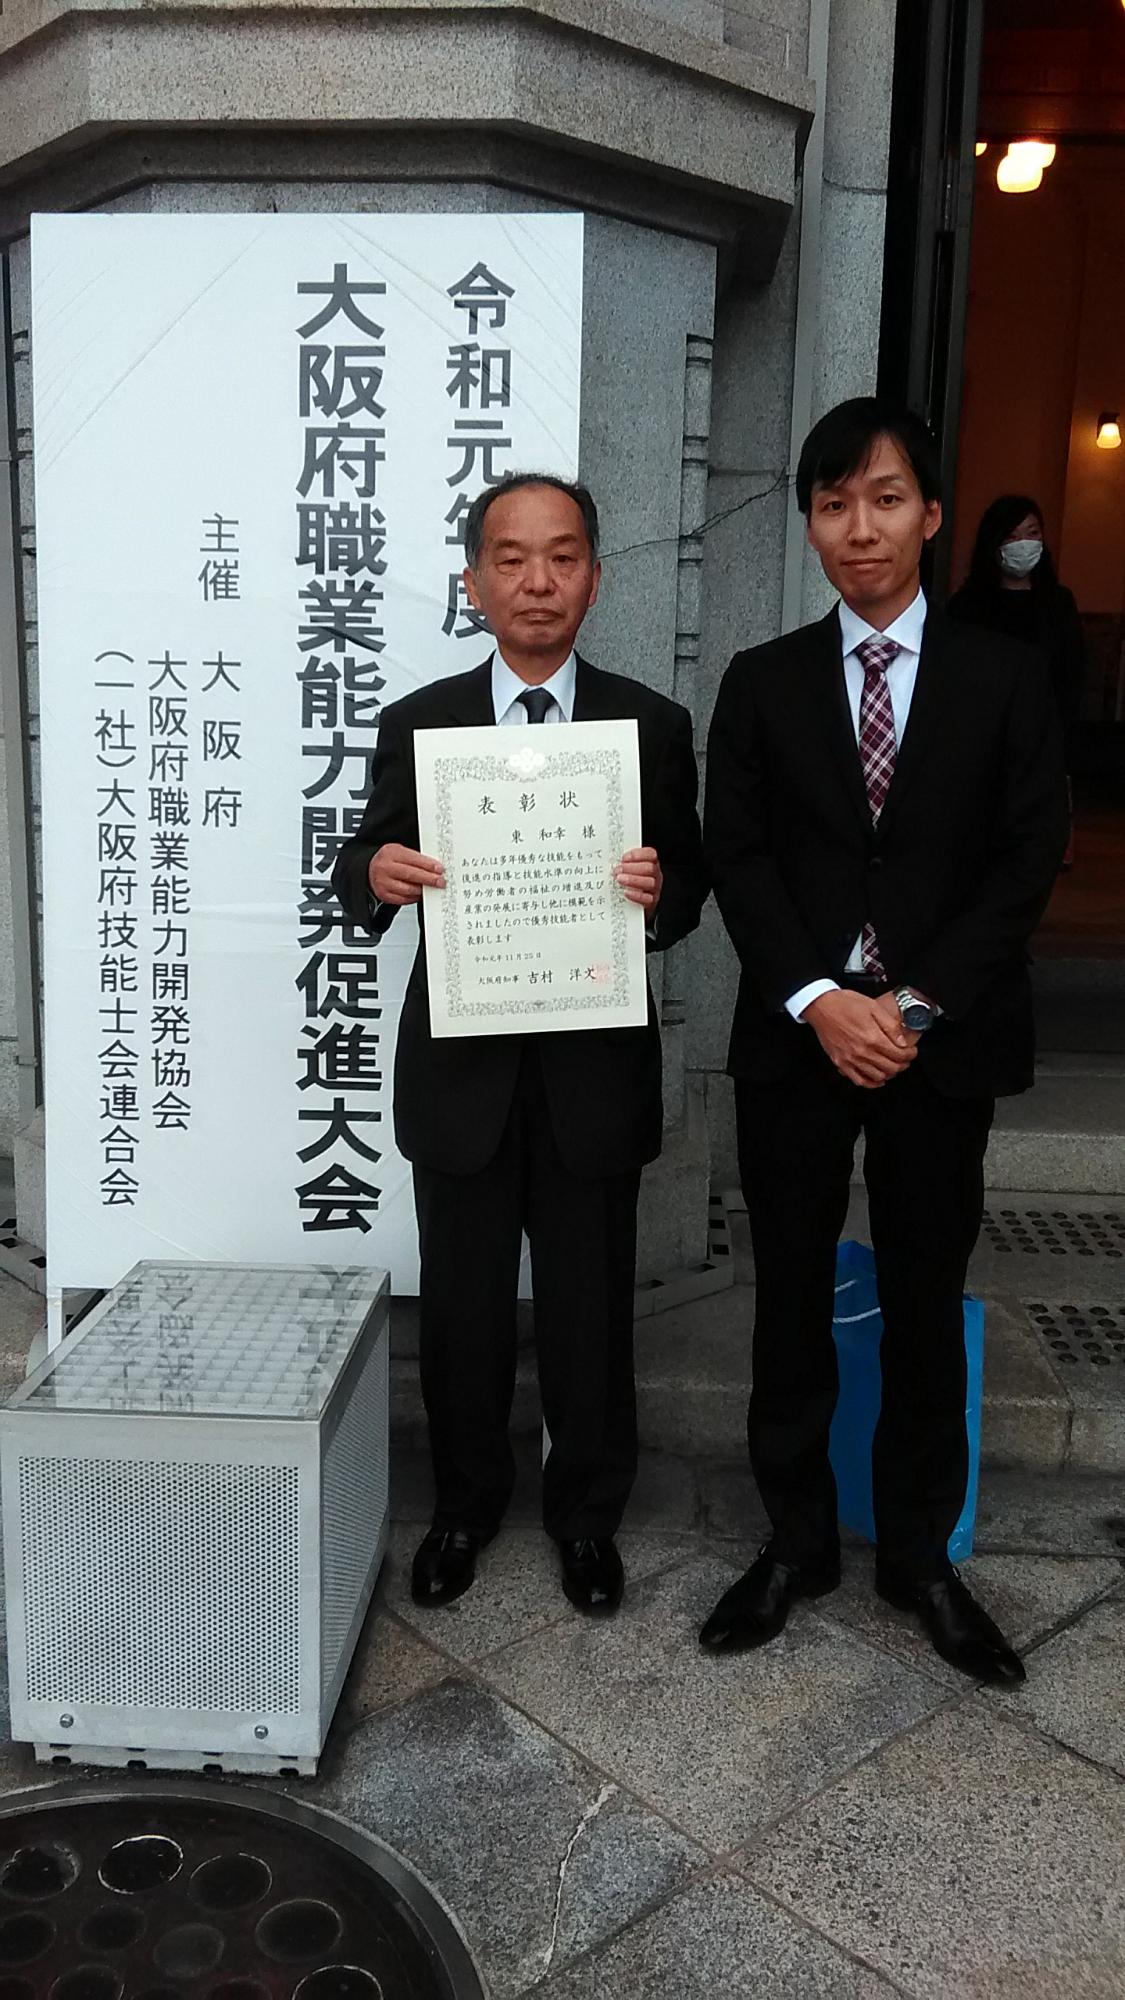 表彰を受けた株式会社西村製作所の東さん（左）と取締役の西村さん（右）